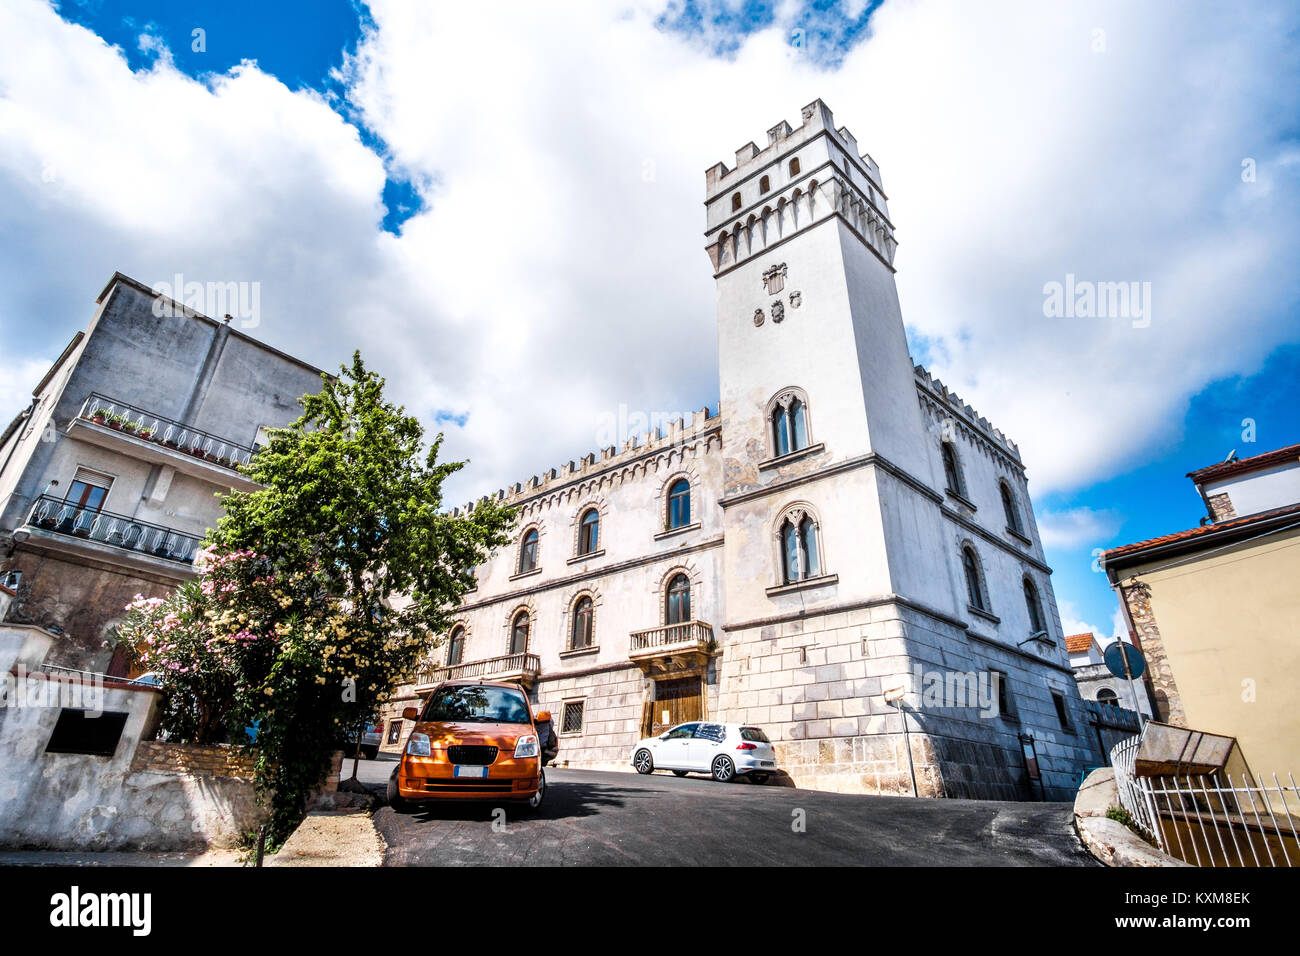 Vico Del Gargano - Apulia - Italy - Palazzo della Bella Stock Photo